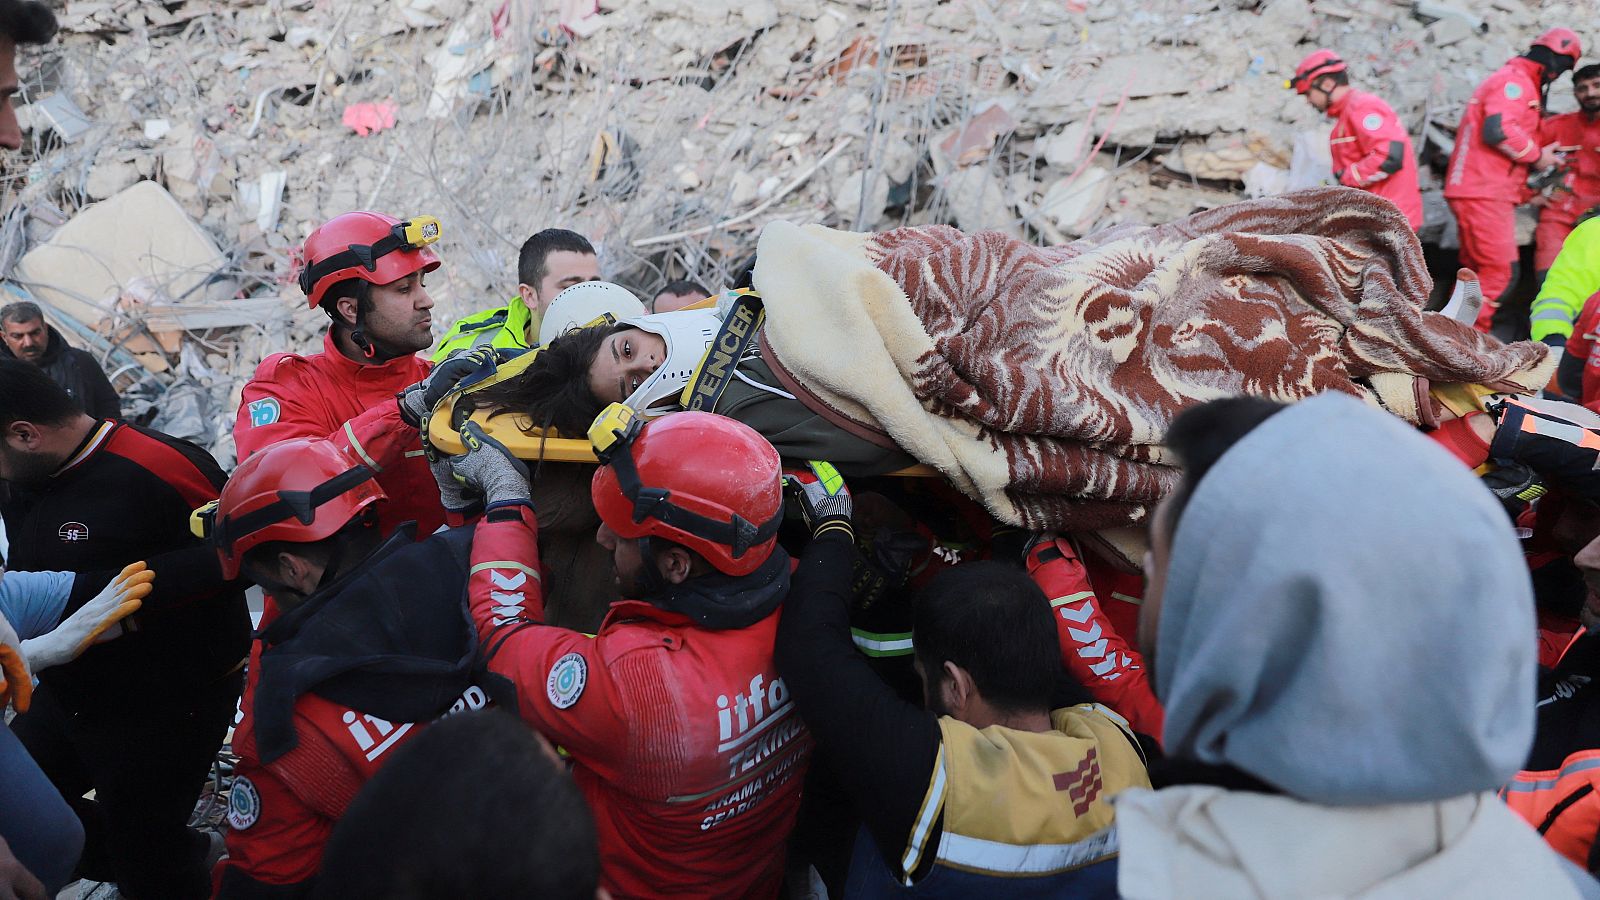 Los equipos de rescate españoles ya trabajan a contra reloj para buscar supervivientes eb Turquía y Siria